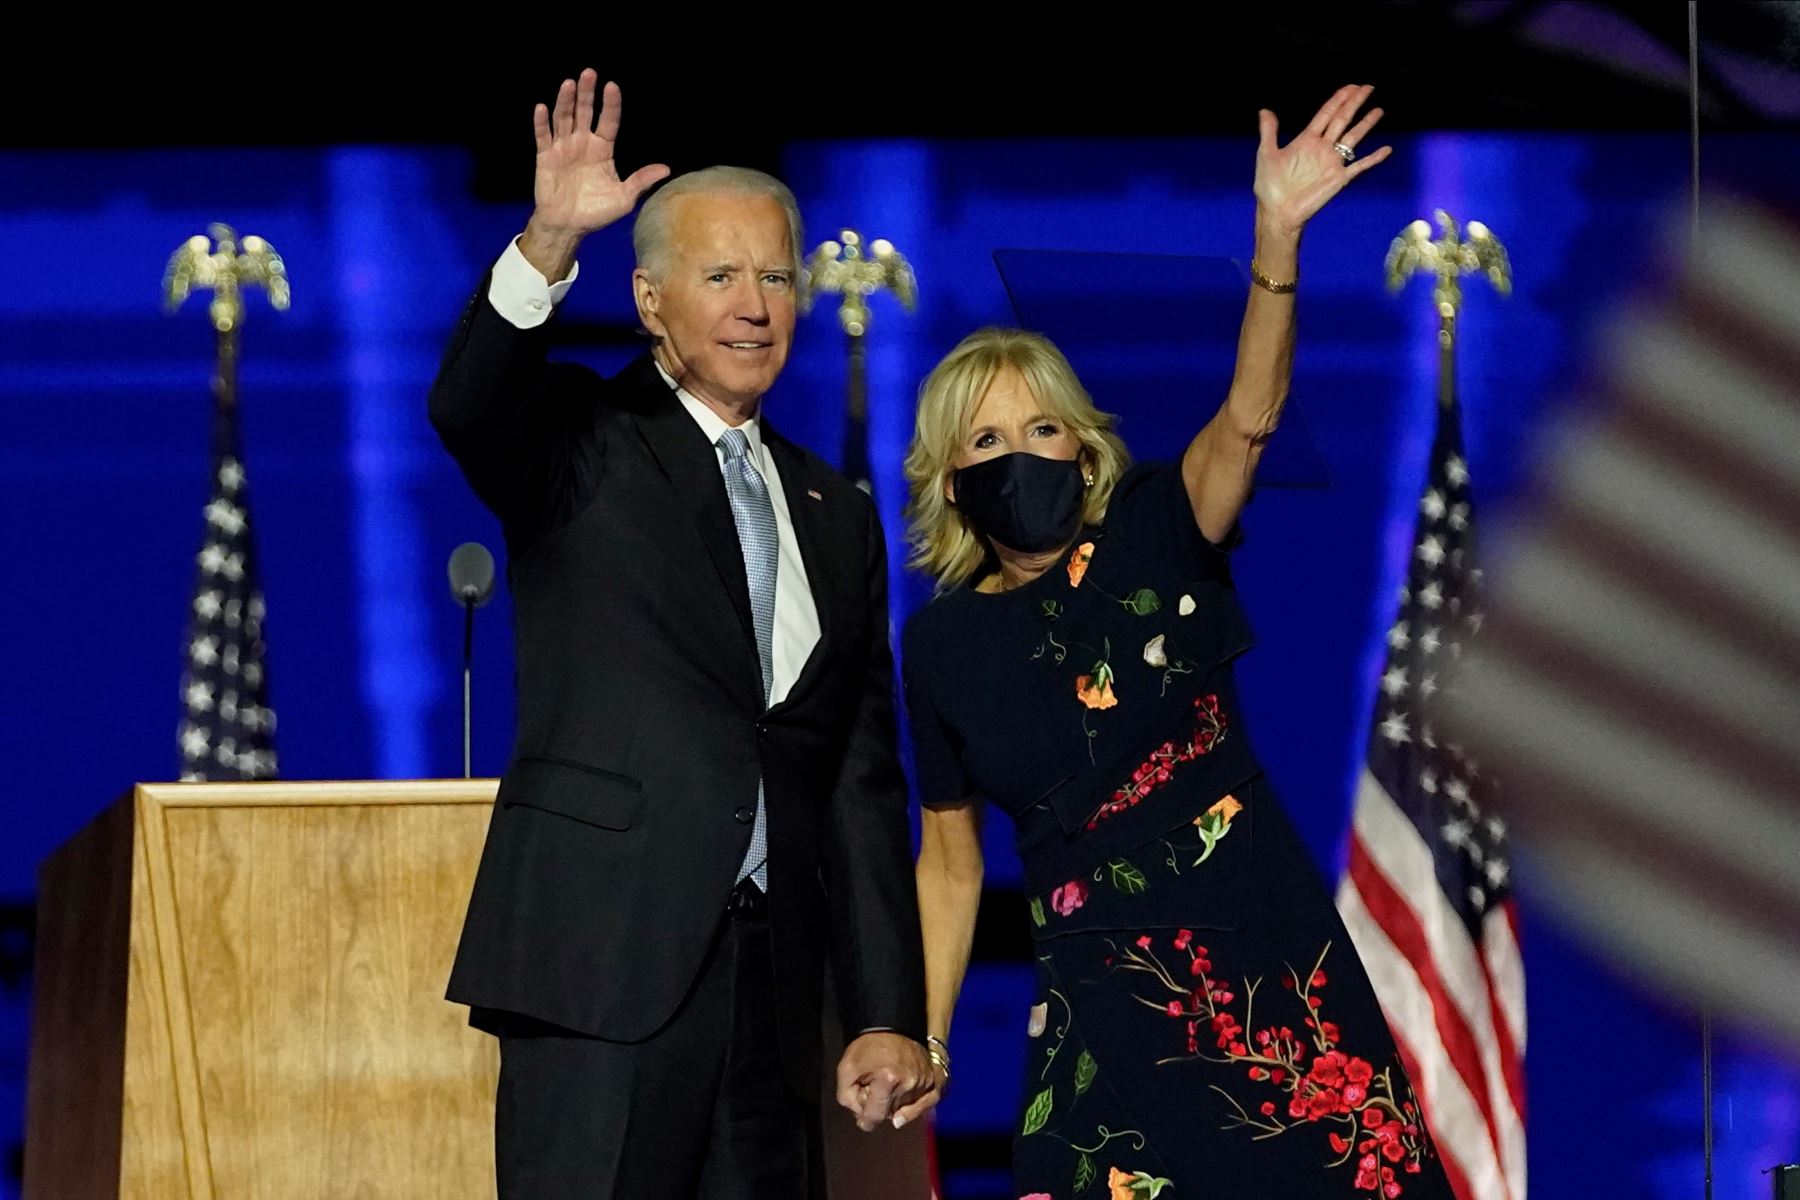 El presidente electo de EE. UU., Joe Biden, con su esposa Jill Biden, saludan a la multitud en el escenario después de pronunciar su discurso en Wilmington, Delaware, y ser declarado ganador de las elecciones presidenciales de EE. UU.
Foto: AFP